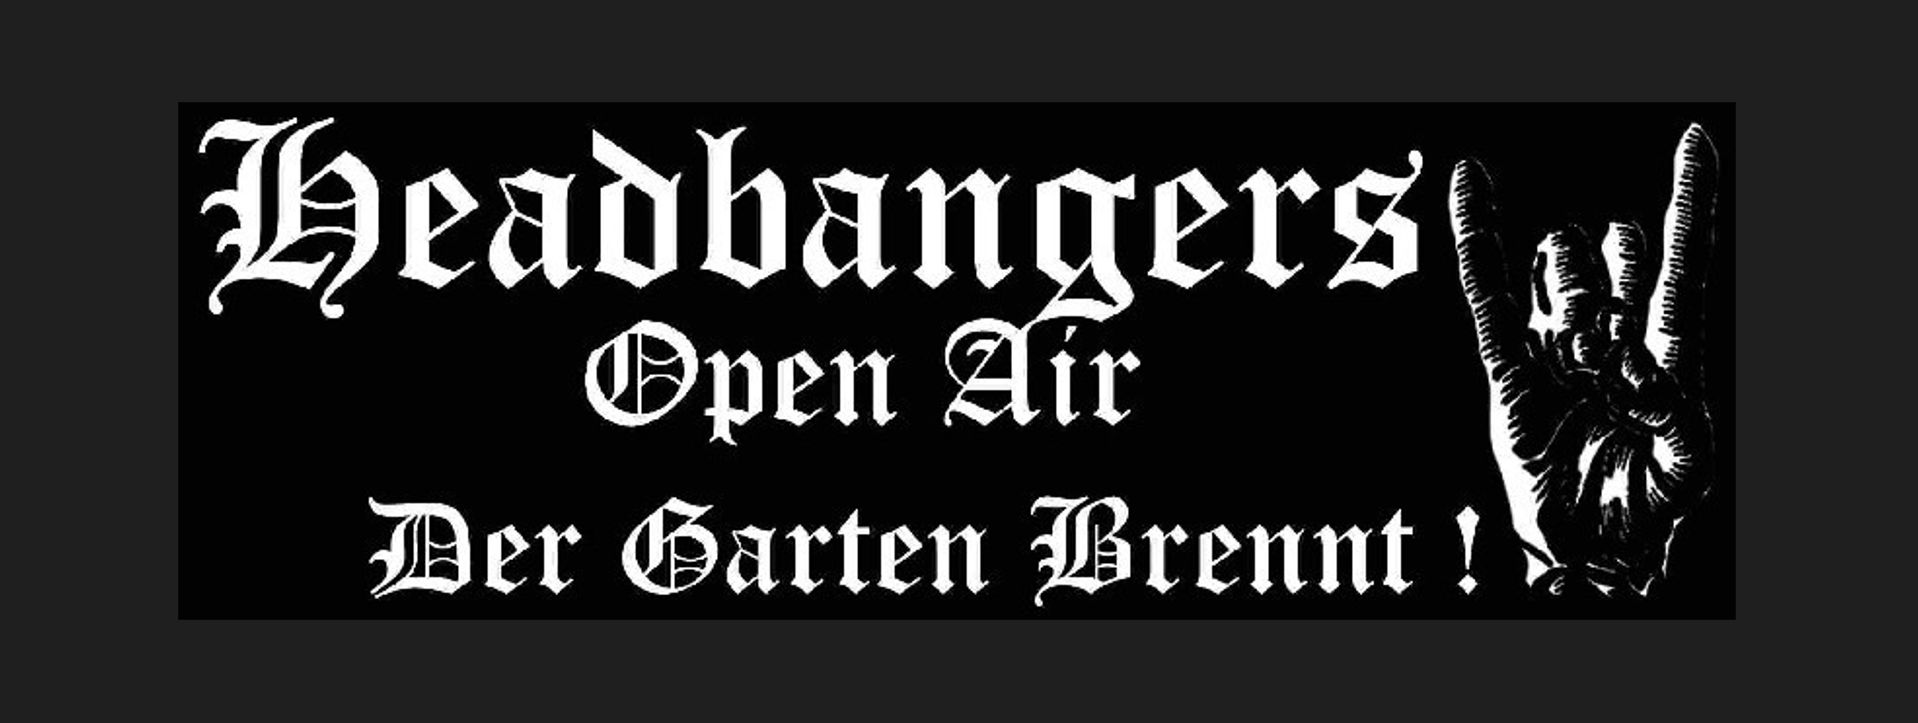 headbangers open-air logo